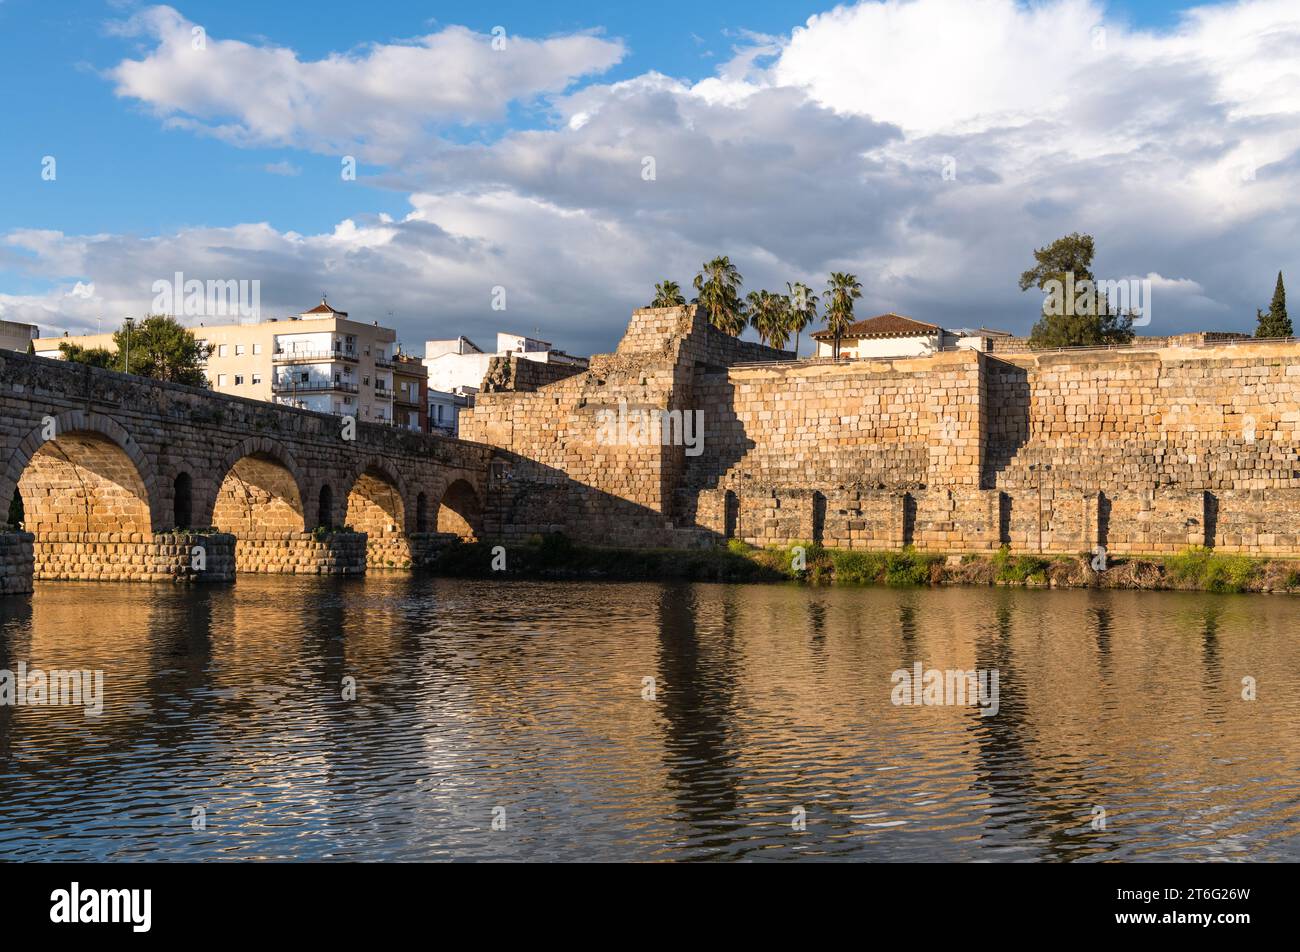 Vue vers Puente Romano (pont romain) sur la rivière Guadiana, le plus long pont du monde (en termes de distance) survivant des temps anciens et Alcaza Banque D'Images